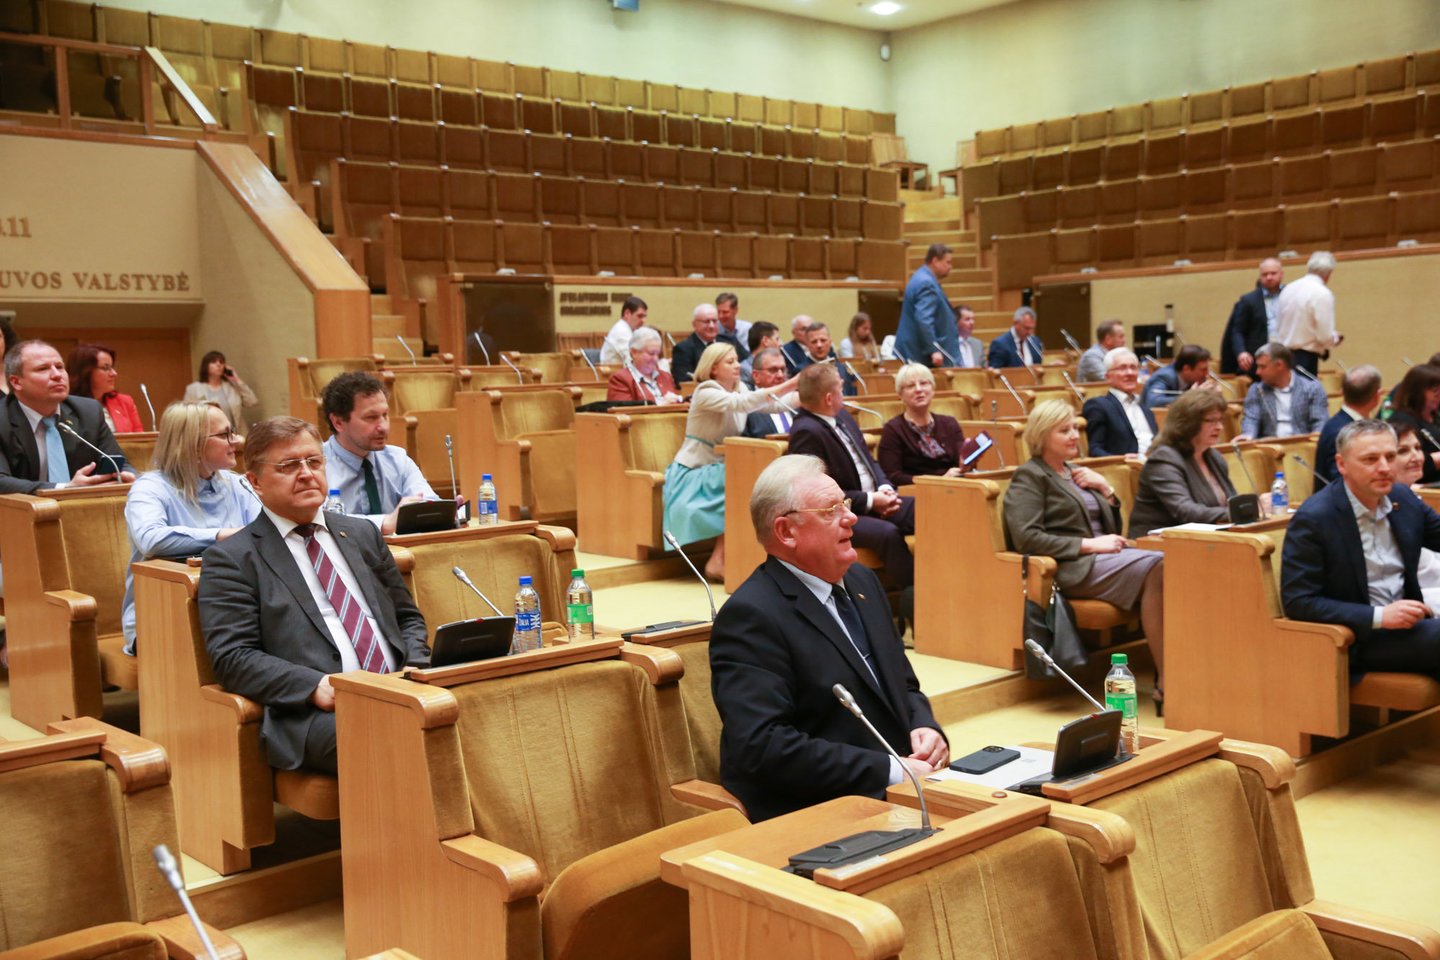 Nors ir sulaukusi atsiprašymo, opozicija paliko Seimo salę ir iškeliavo dirbti atskirai.<br>R.Danisevičiaus nuotr.